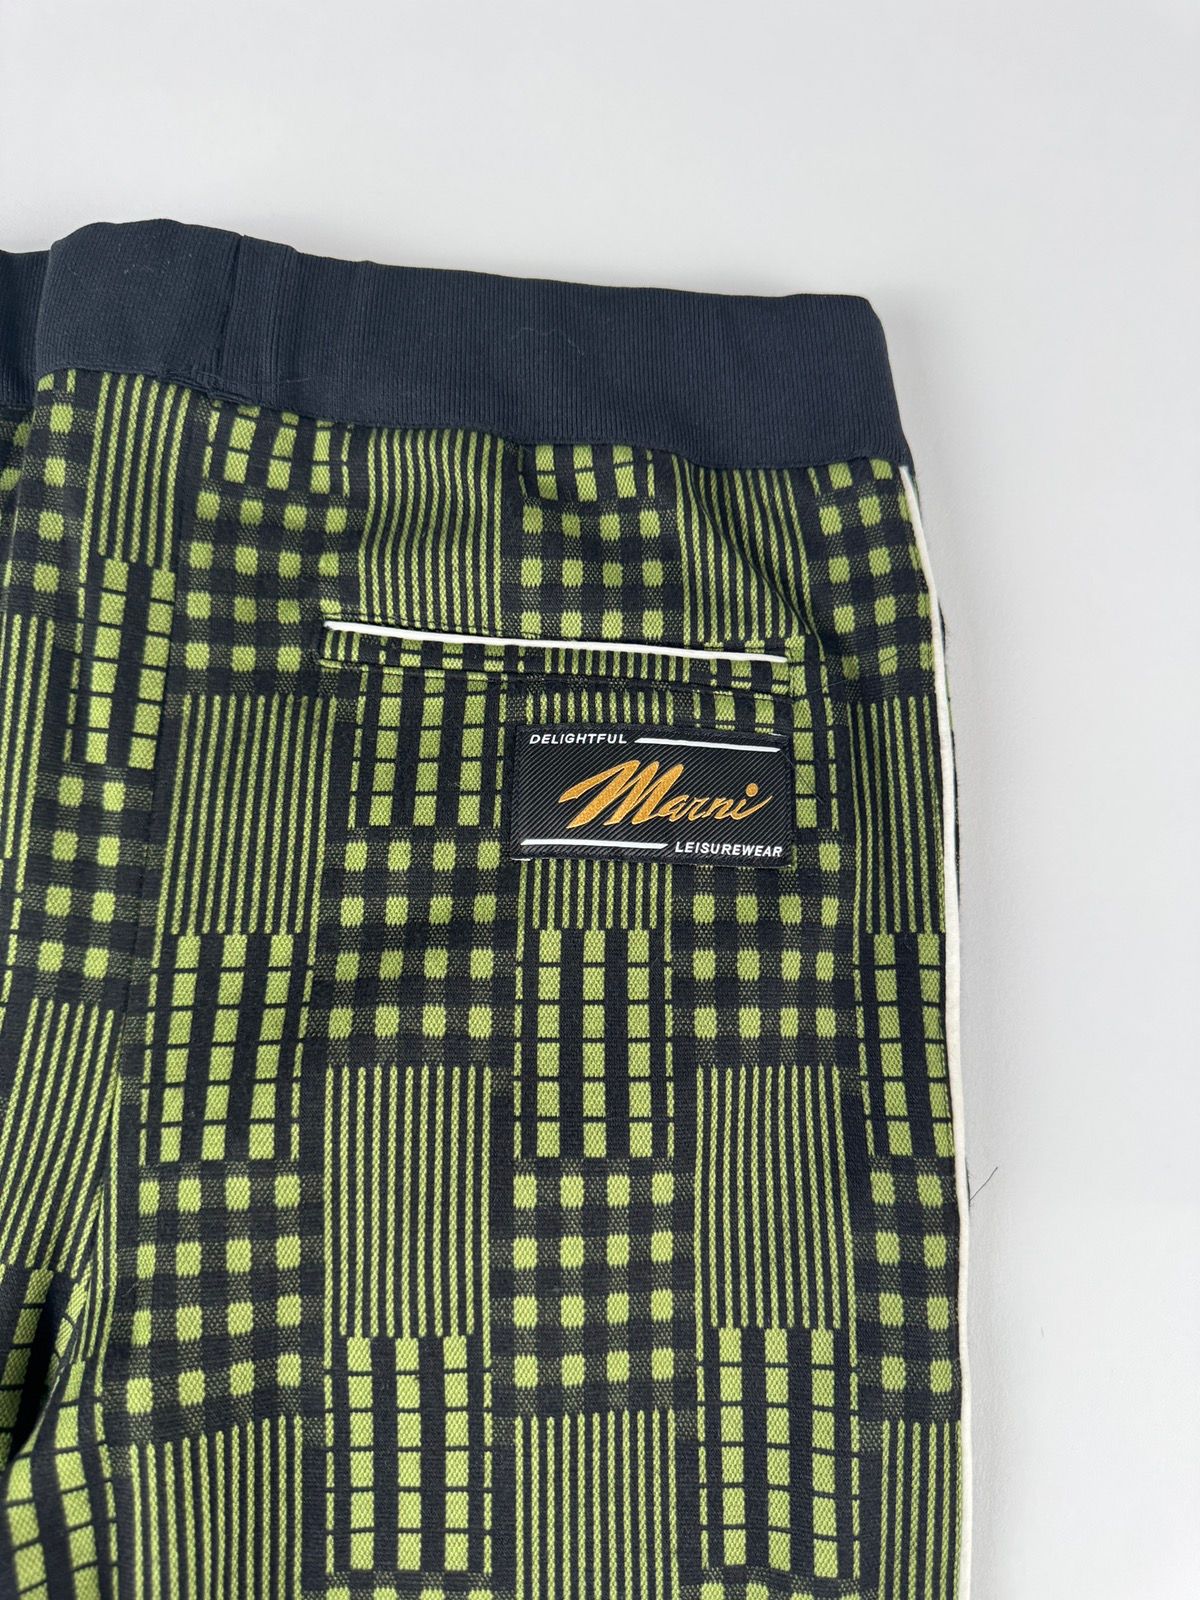 Marni Marni Striped Jersey Trousers Size US 30 / EU 46 - 7 Thumbnail